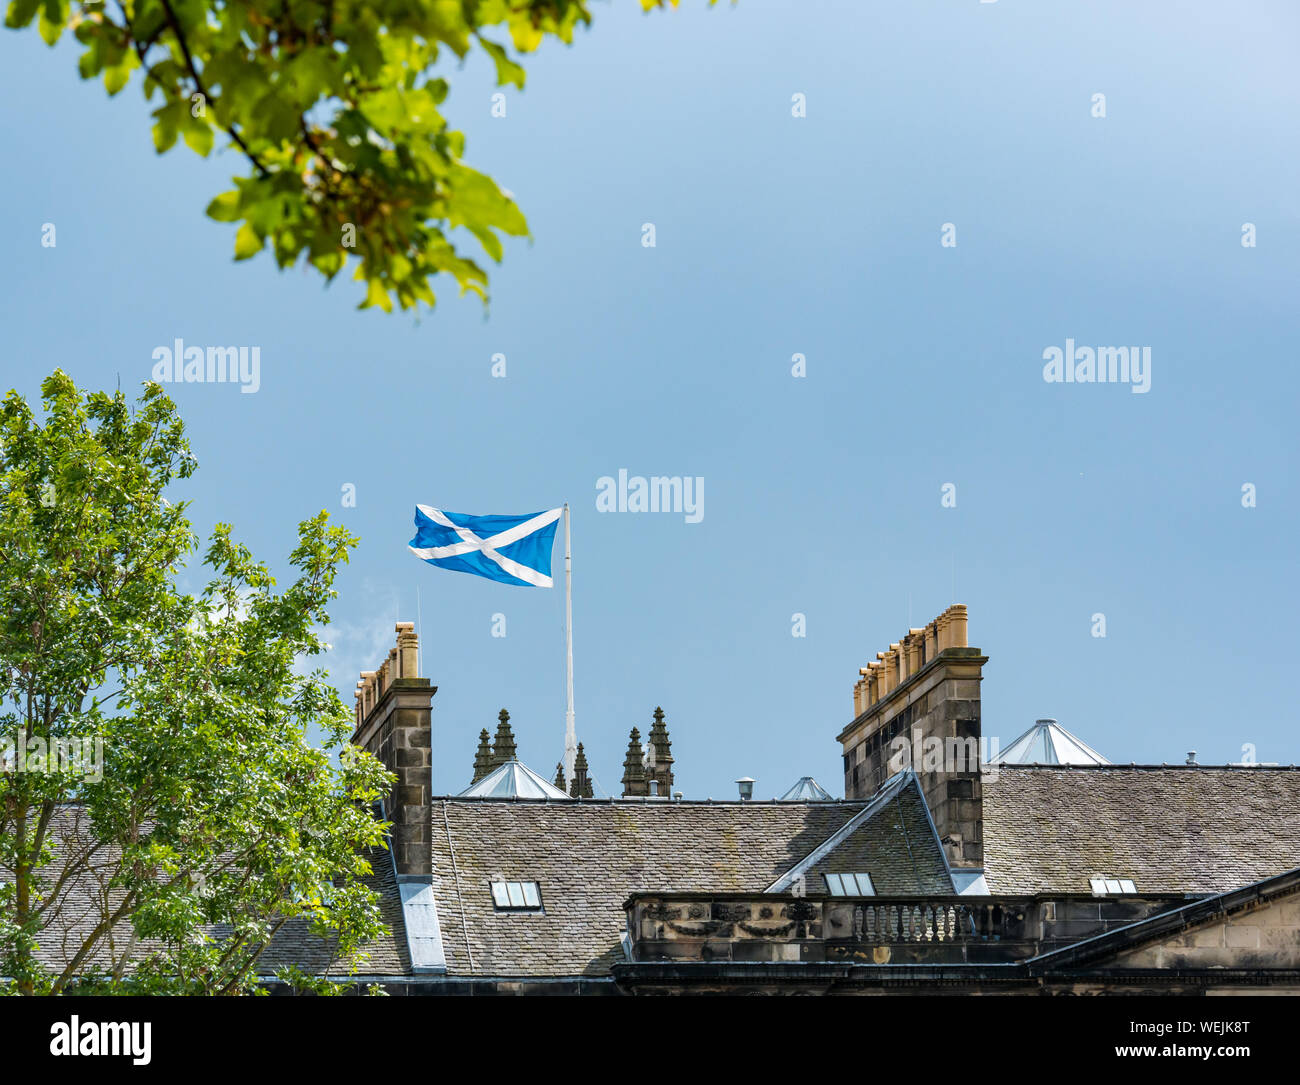 Sautoir écossais volant au-dessus des toits du pavillon immeuble le jour ensoleillé, ciel bleu, Édimbourg, Écosse, Royaume-Uni Banque D'Images